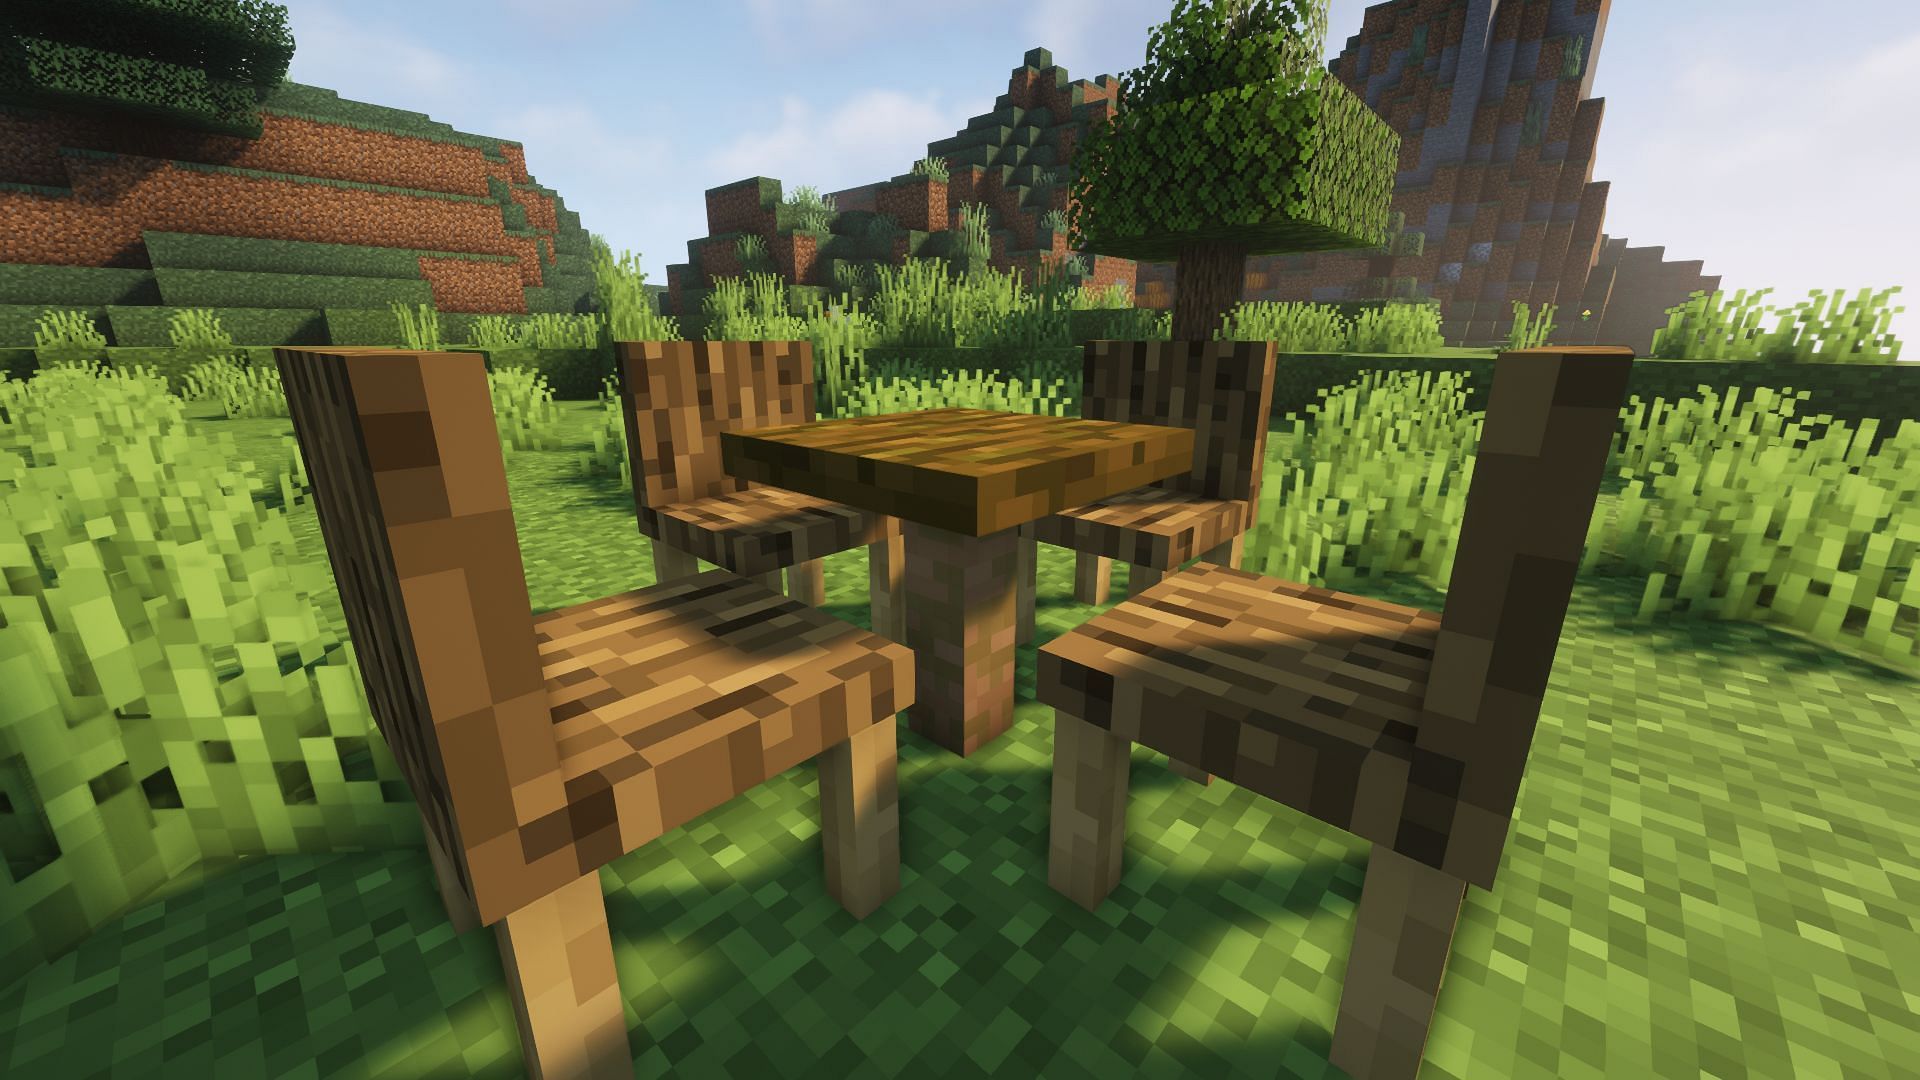 Furniture in Minecraft (Image via Minecraft)